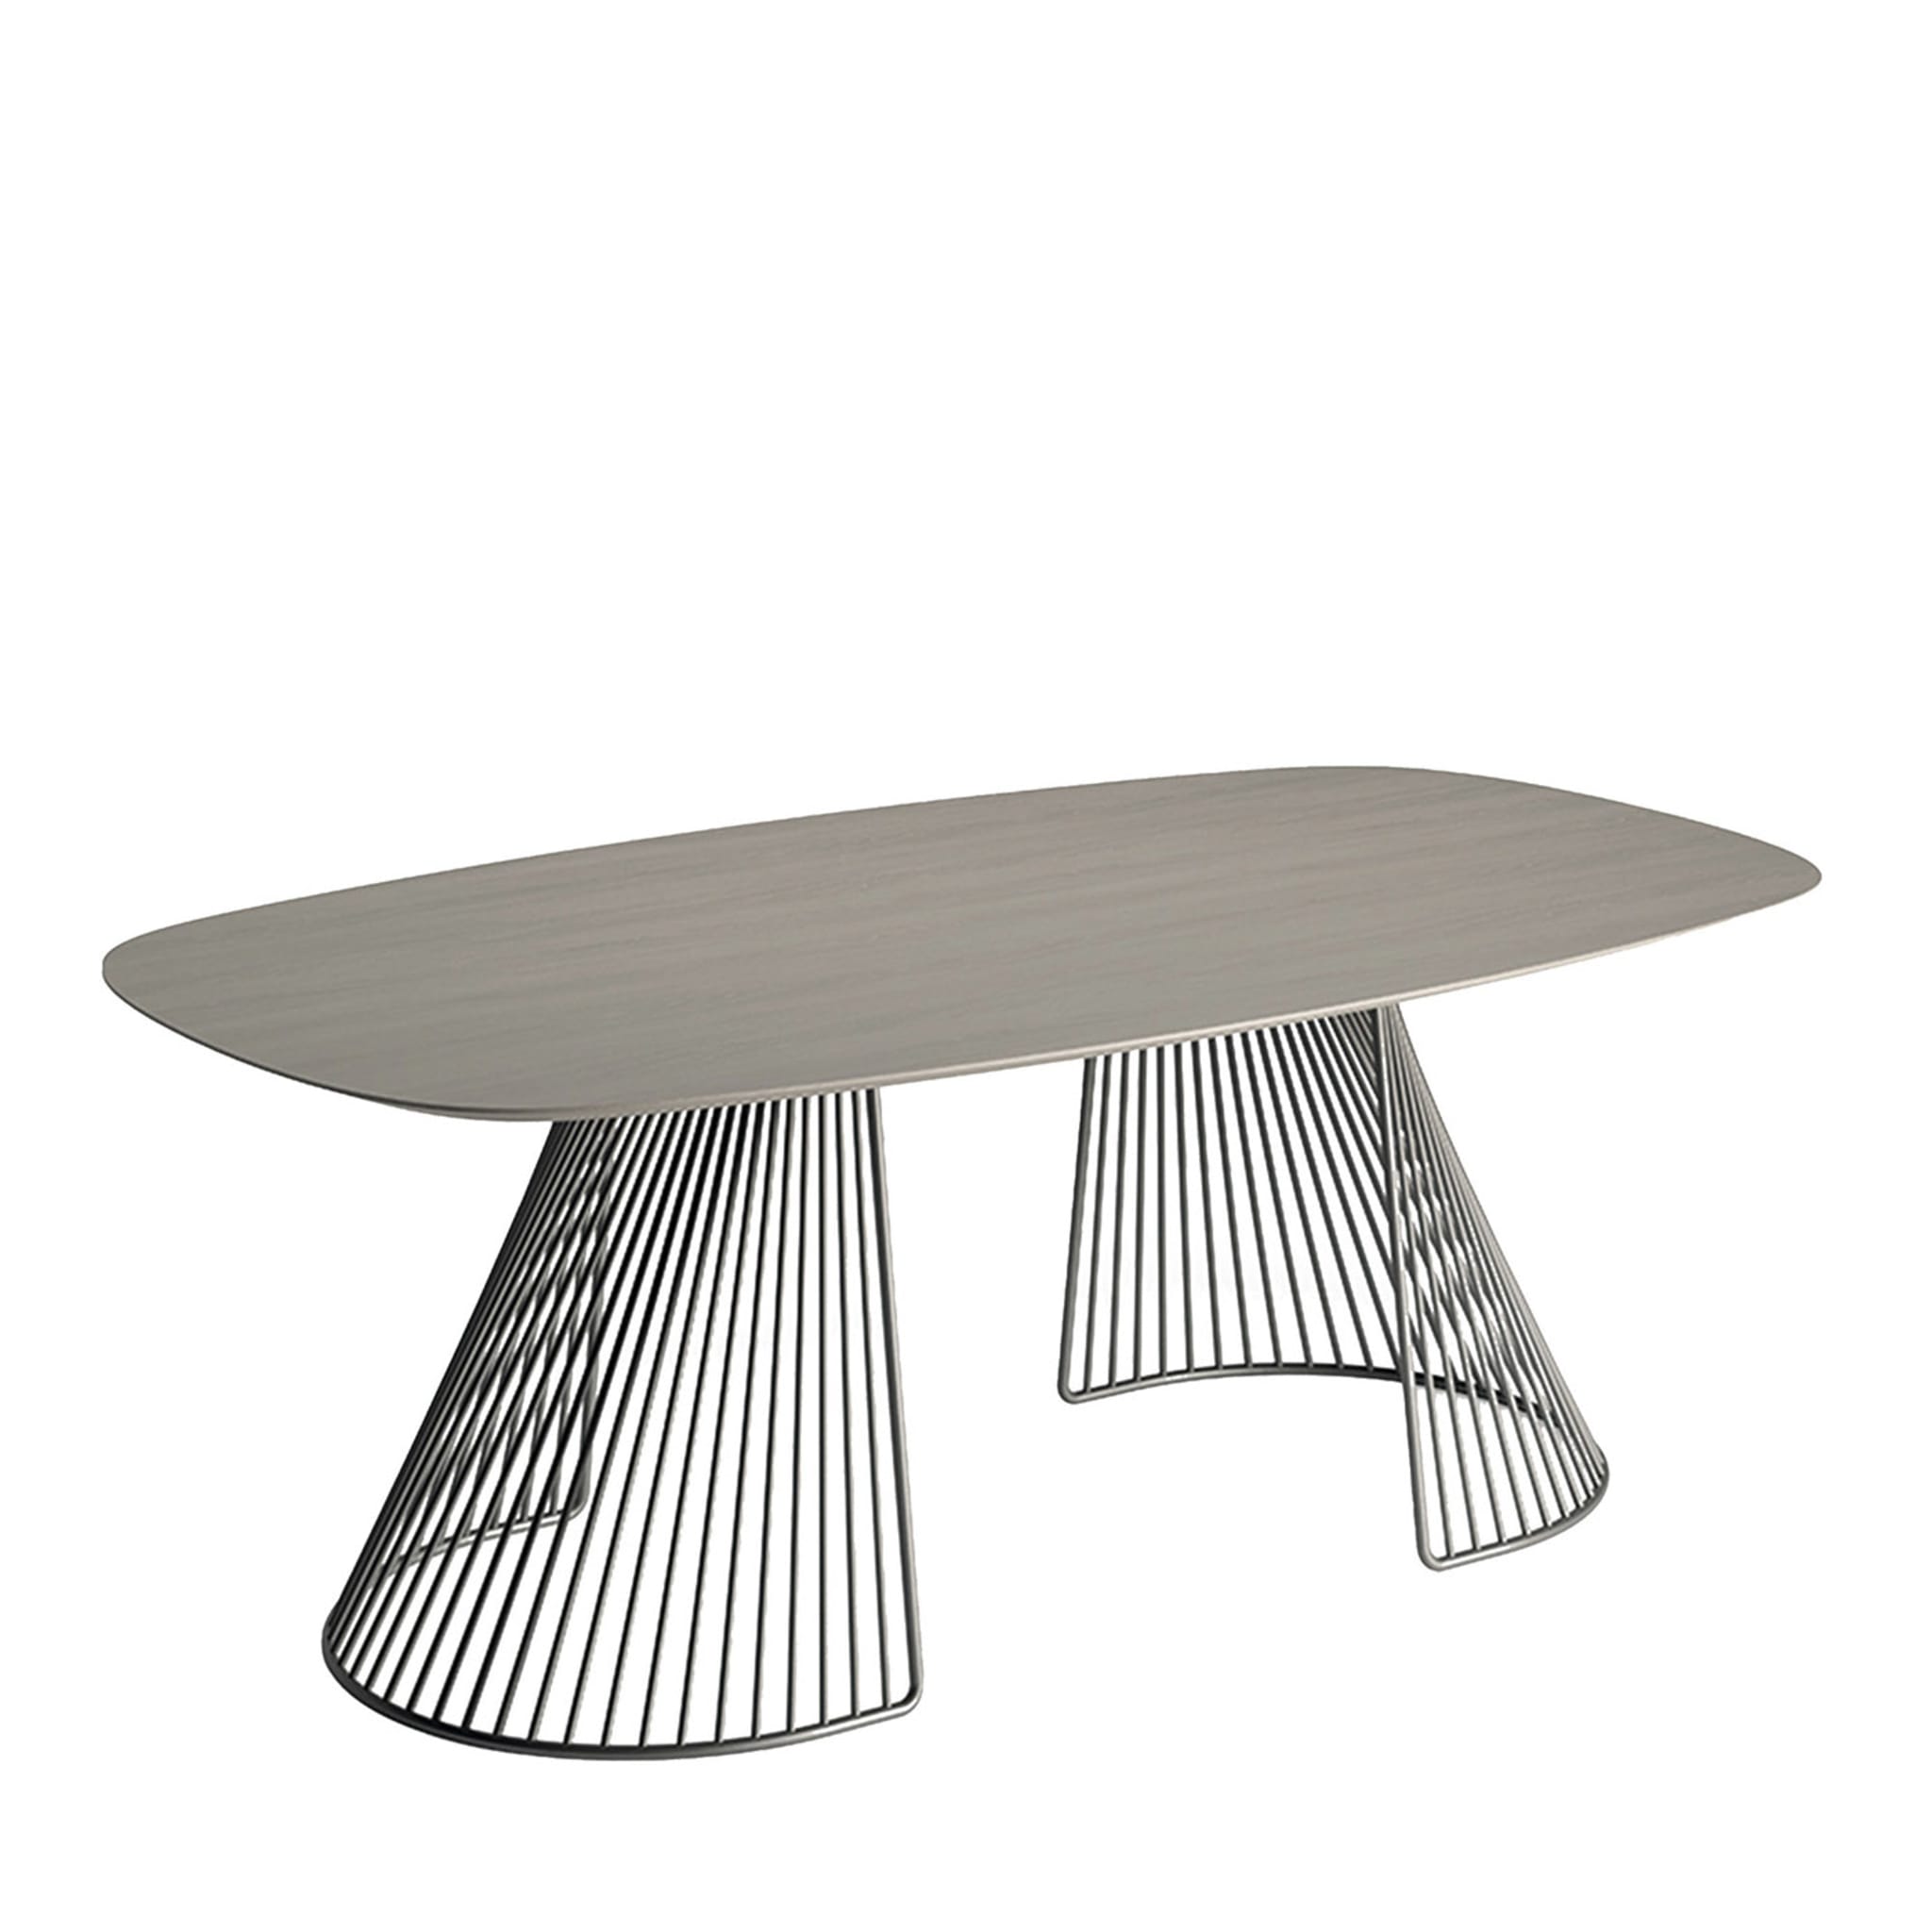 Kanadischer durmast rechteckiger tisch mit gitter von Ciani Design - Hauptansicht